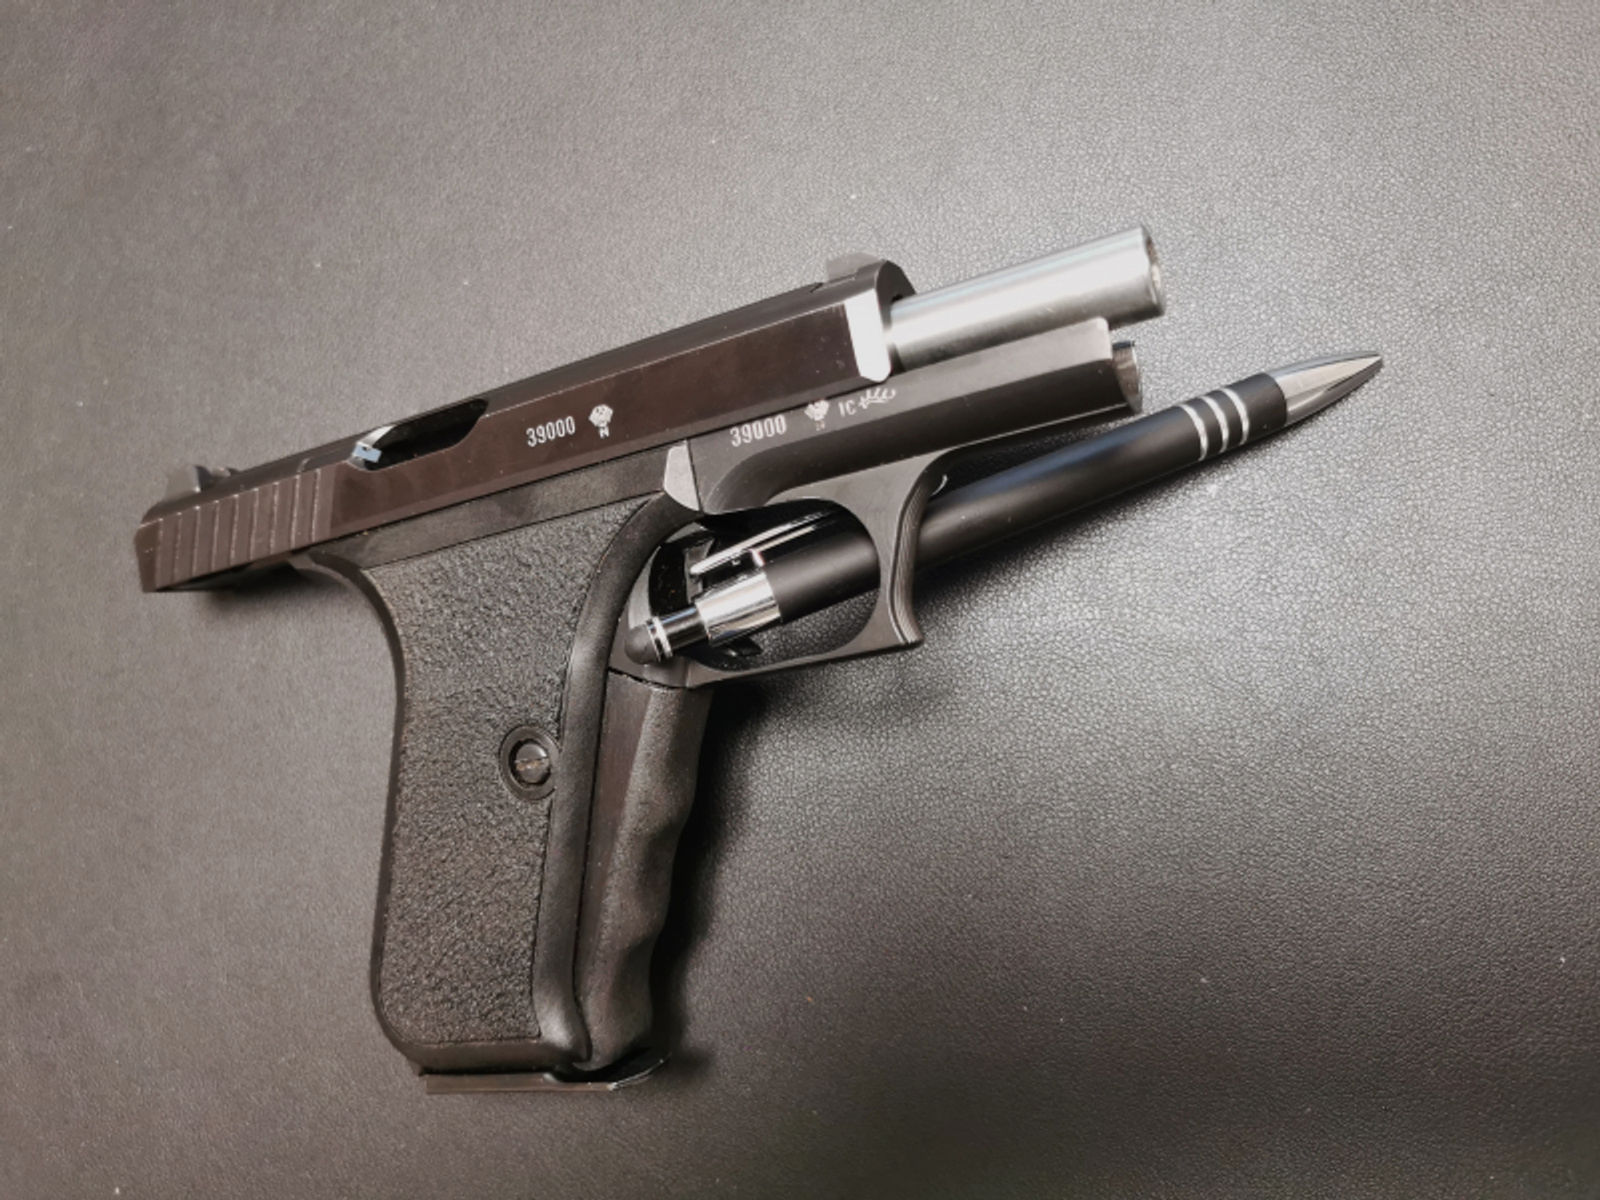 Pistole Heckler und Koch - Modell P7 - SERIENNUMMER 39000 - sehr gut